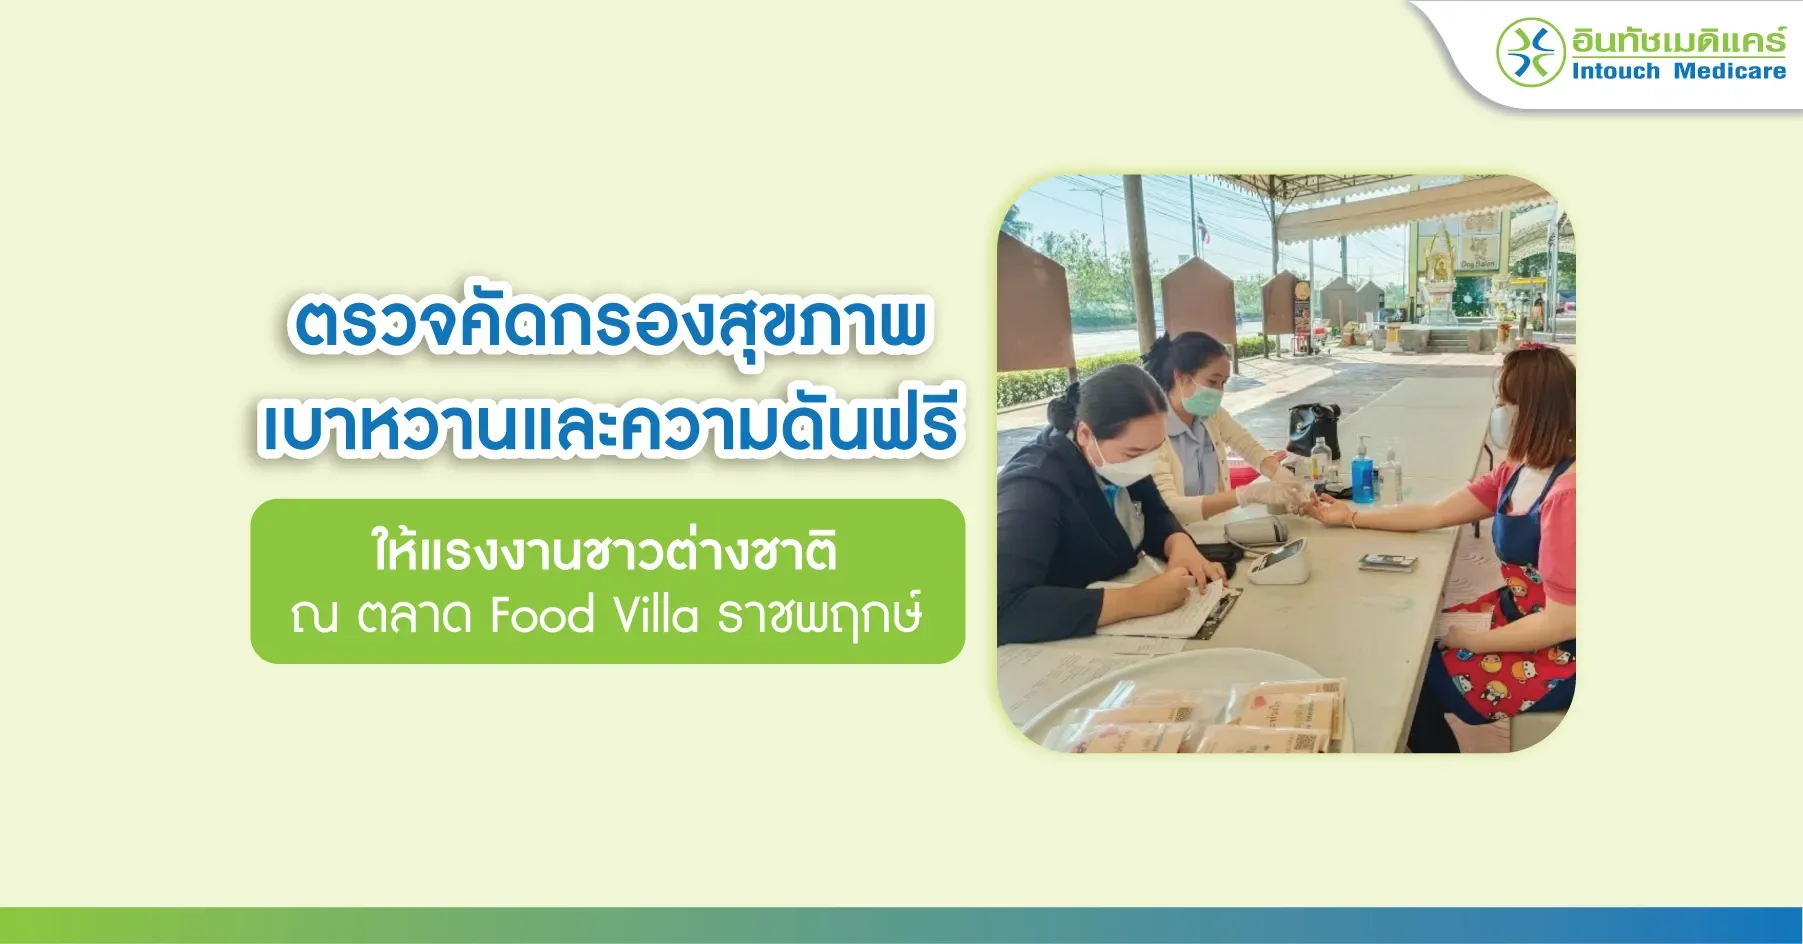 ตรวจคัดกรองสุขภาพ เบาหวานและความดันฟรี  ให้แรงงานชาวต่างชาติ ณ ตลาด Food Villa ราชพฤกษ์